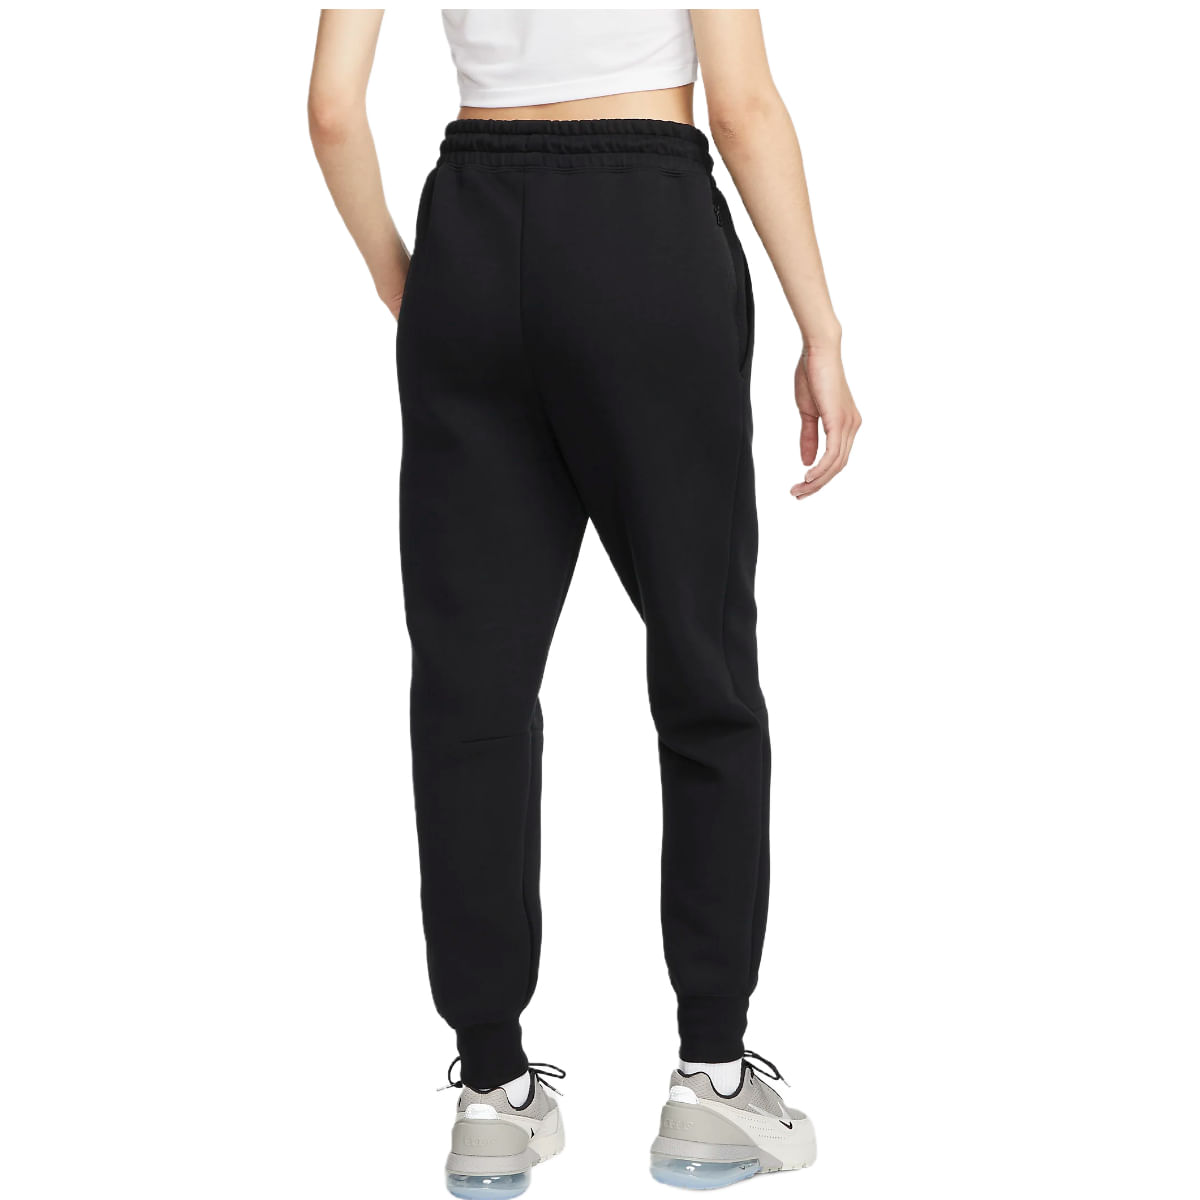 Women's Black Joggers & Sweatpants. Nike IN